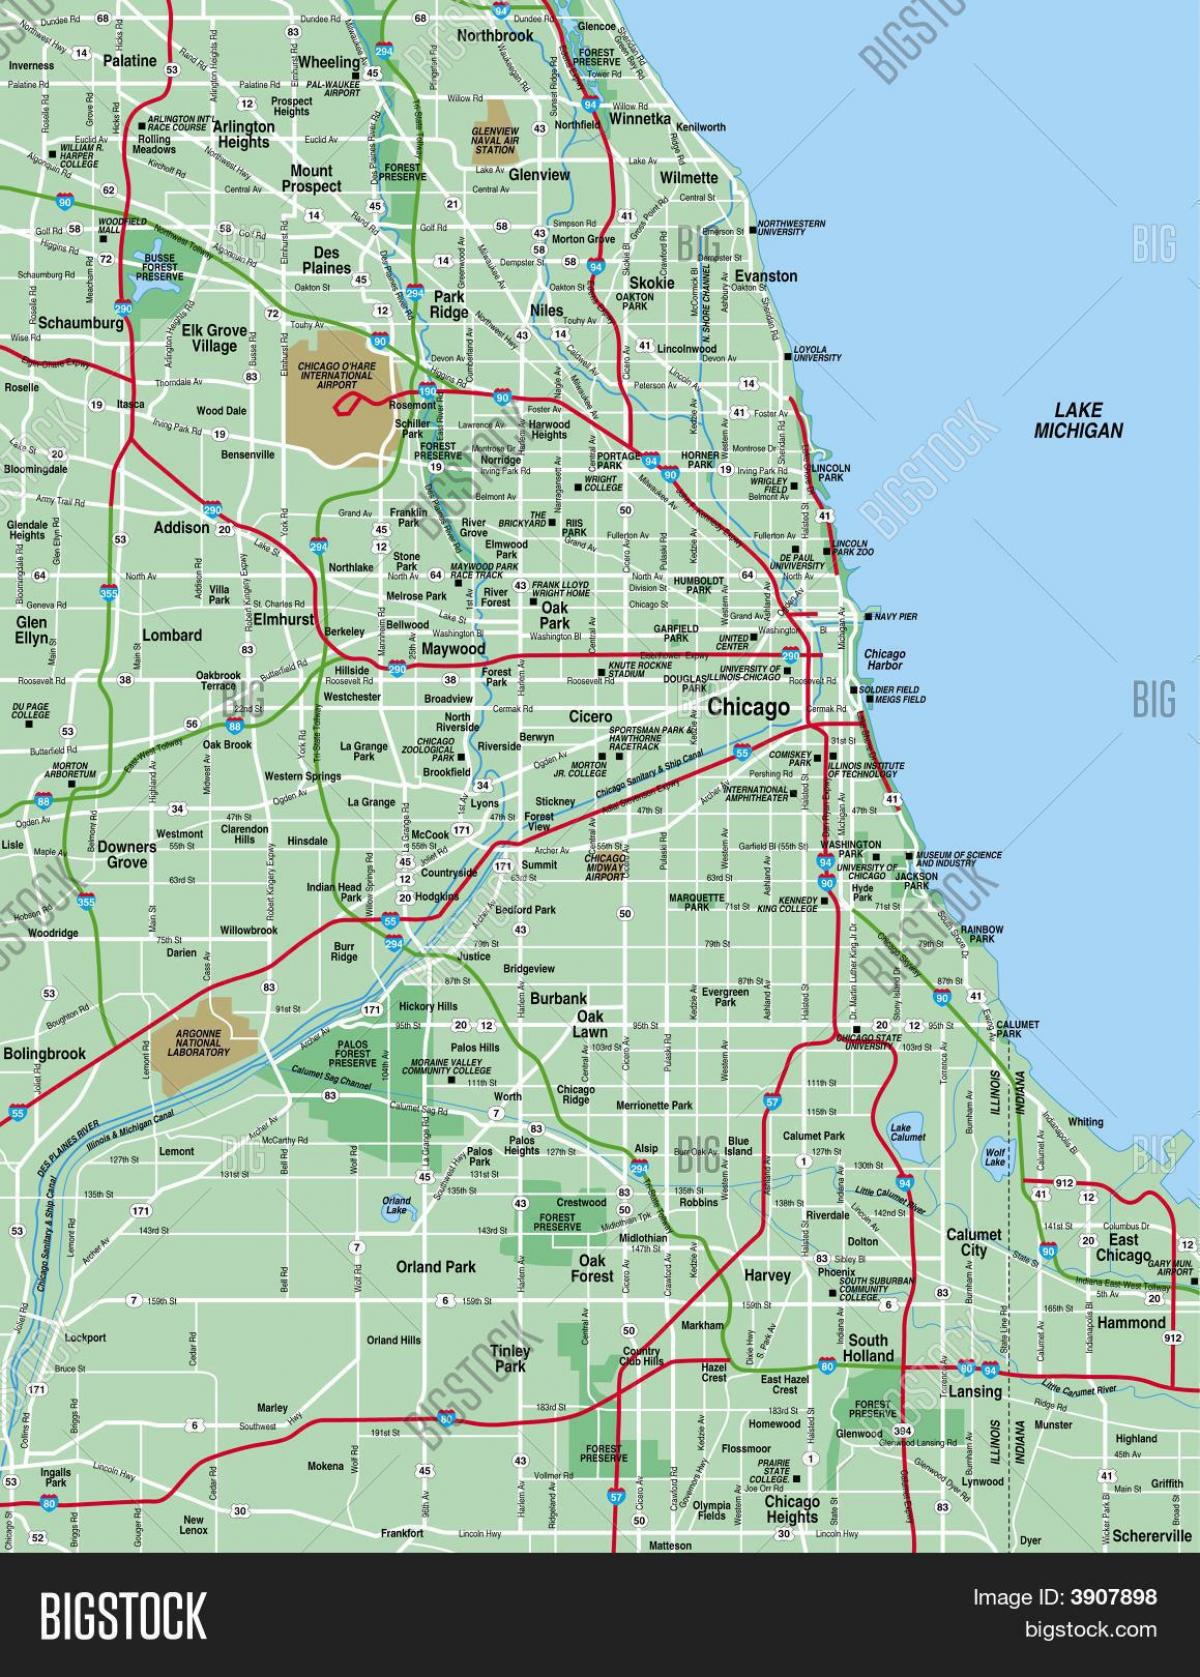 zemljevid Chicago območje